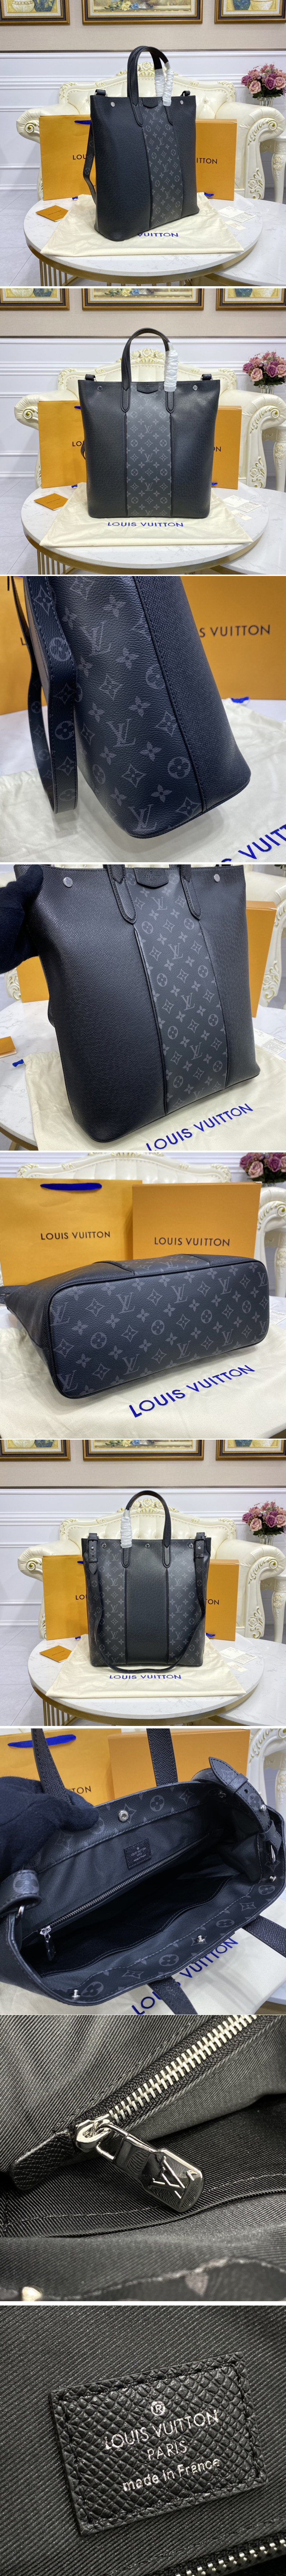 LOUIS VUITTON Lockme Shopper Tote Bag Leather Greige M57346 Purse